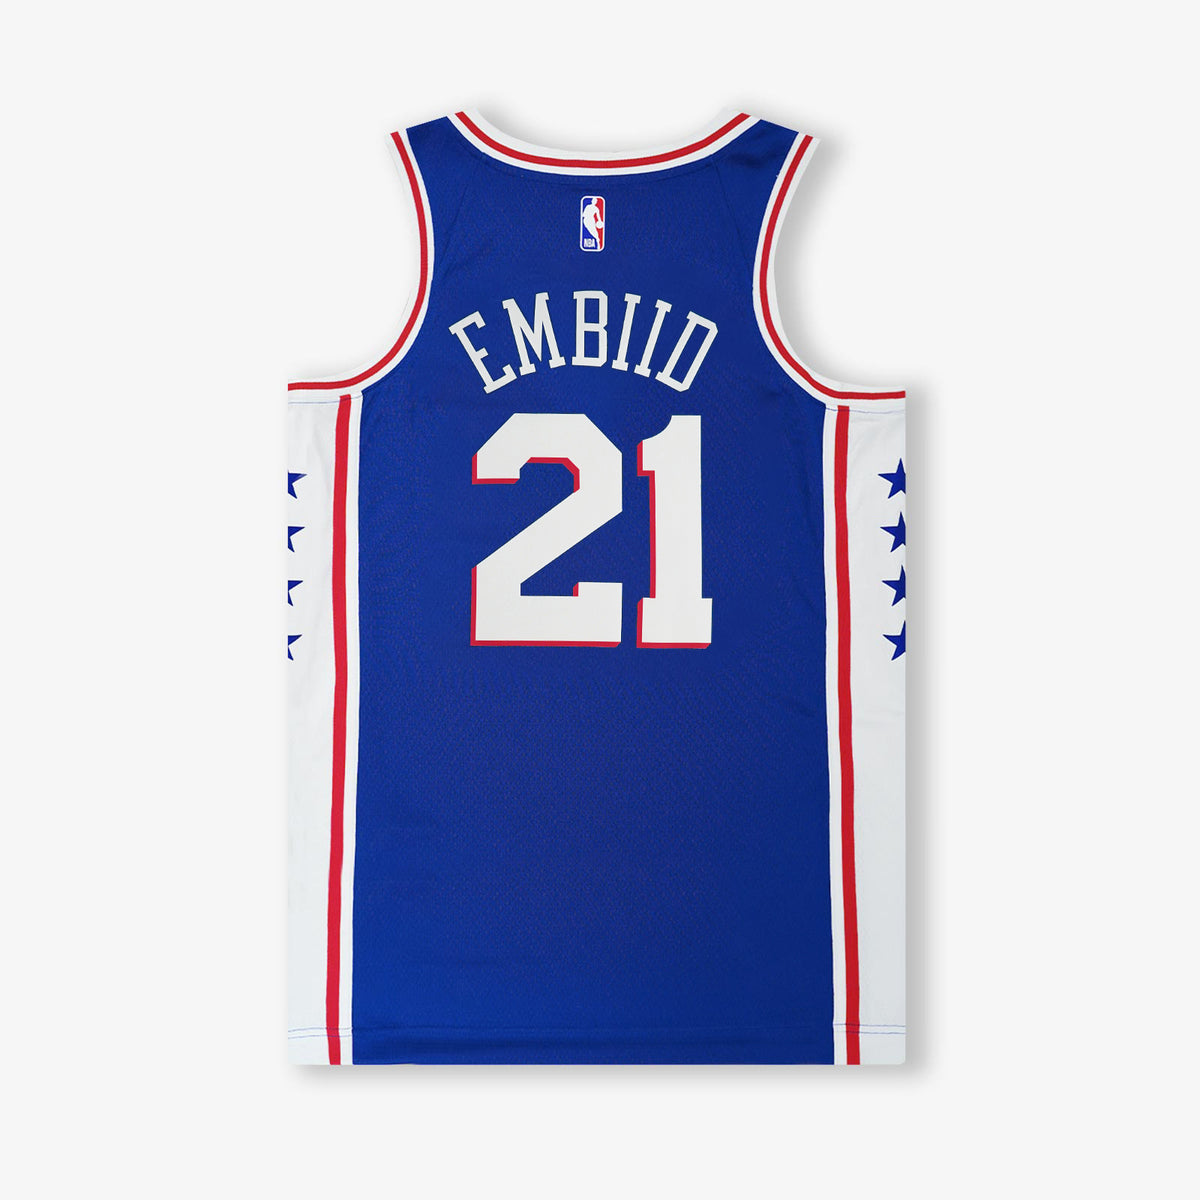 Joel Embiid Philadelphia 76ers Icon Edition Swingman Jersey - Blue